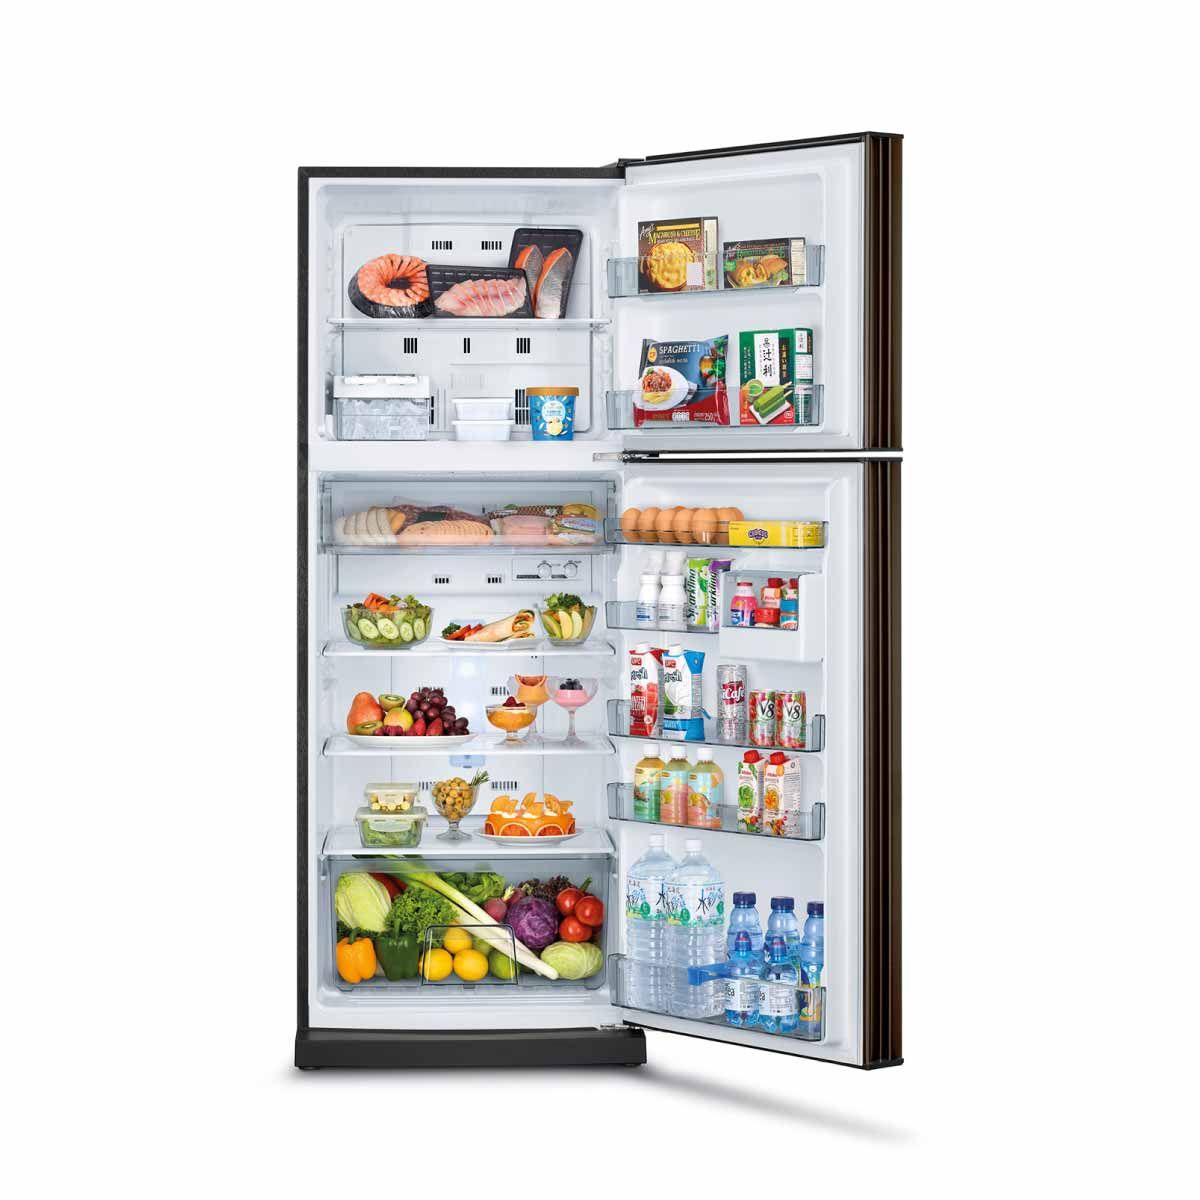 MITSUBISHI ELECTRIC ตู้เย็น 2 ประตู 12.7คิว INVERTER  สีน้ำตาลคอปเปอร์ รุ่น MR-FC38ES